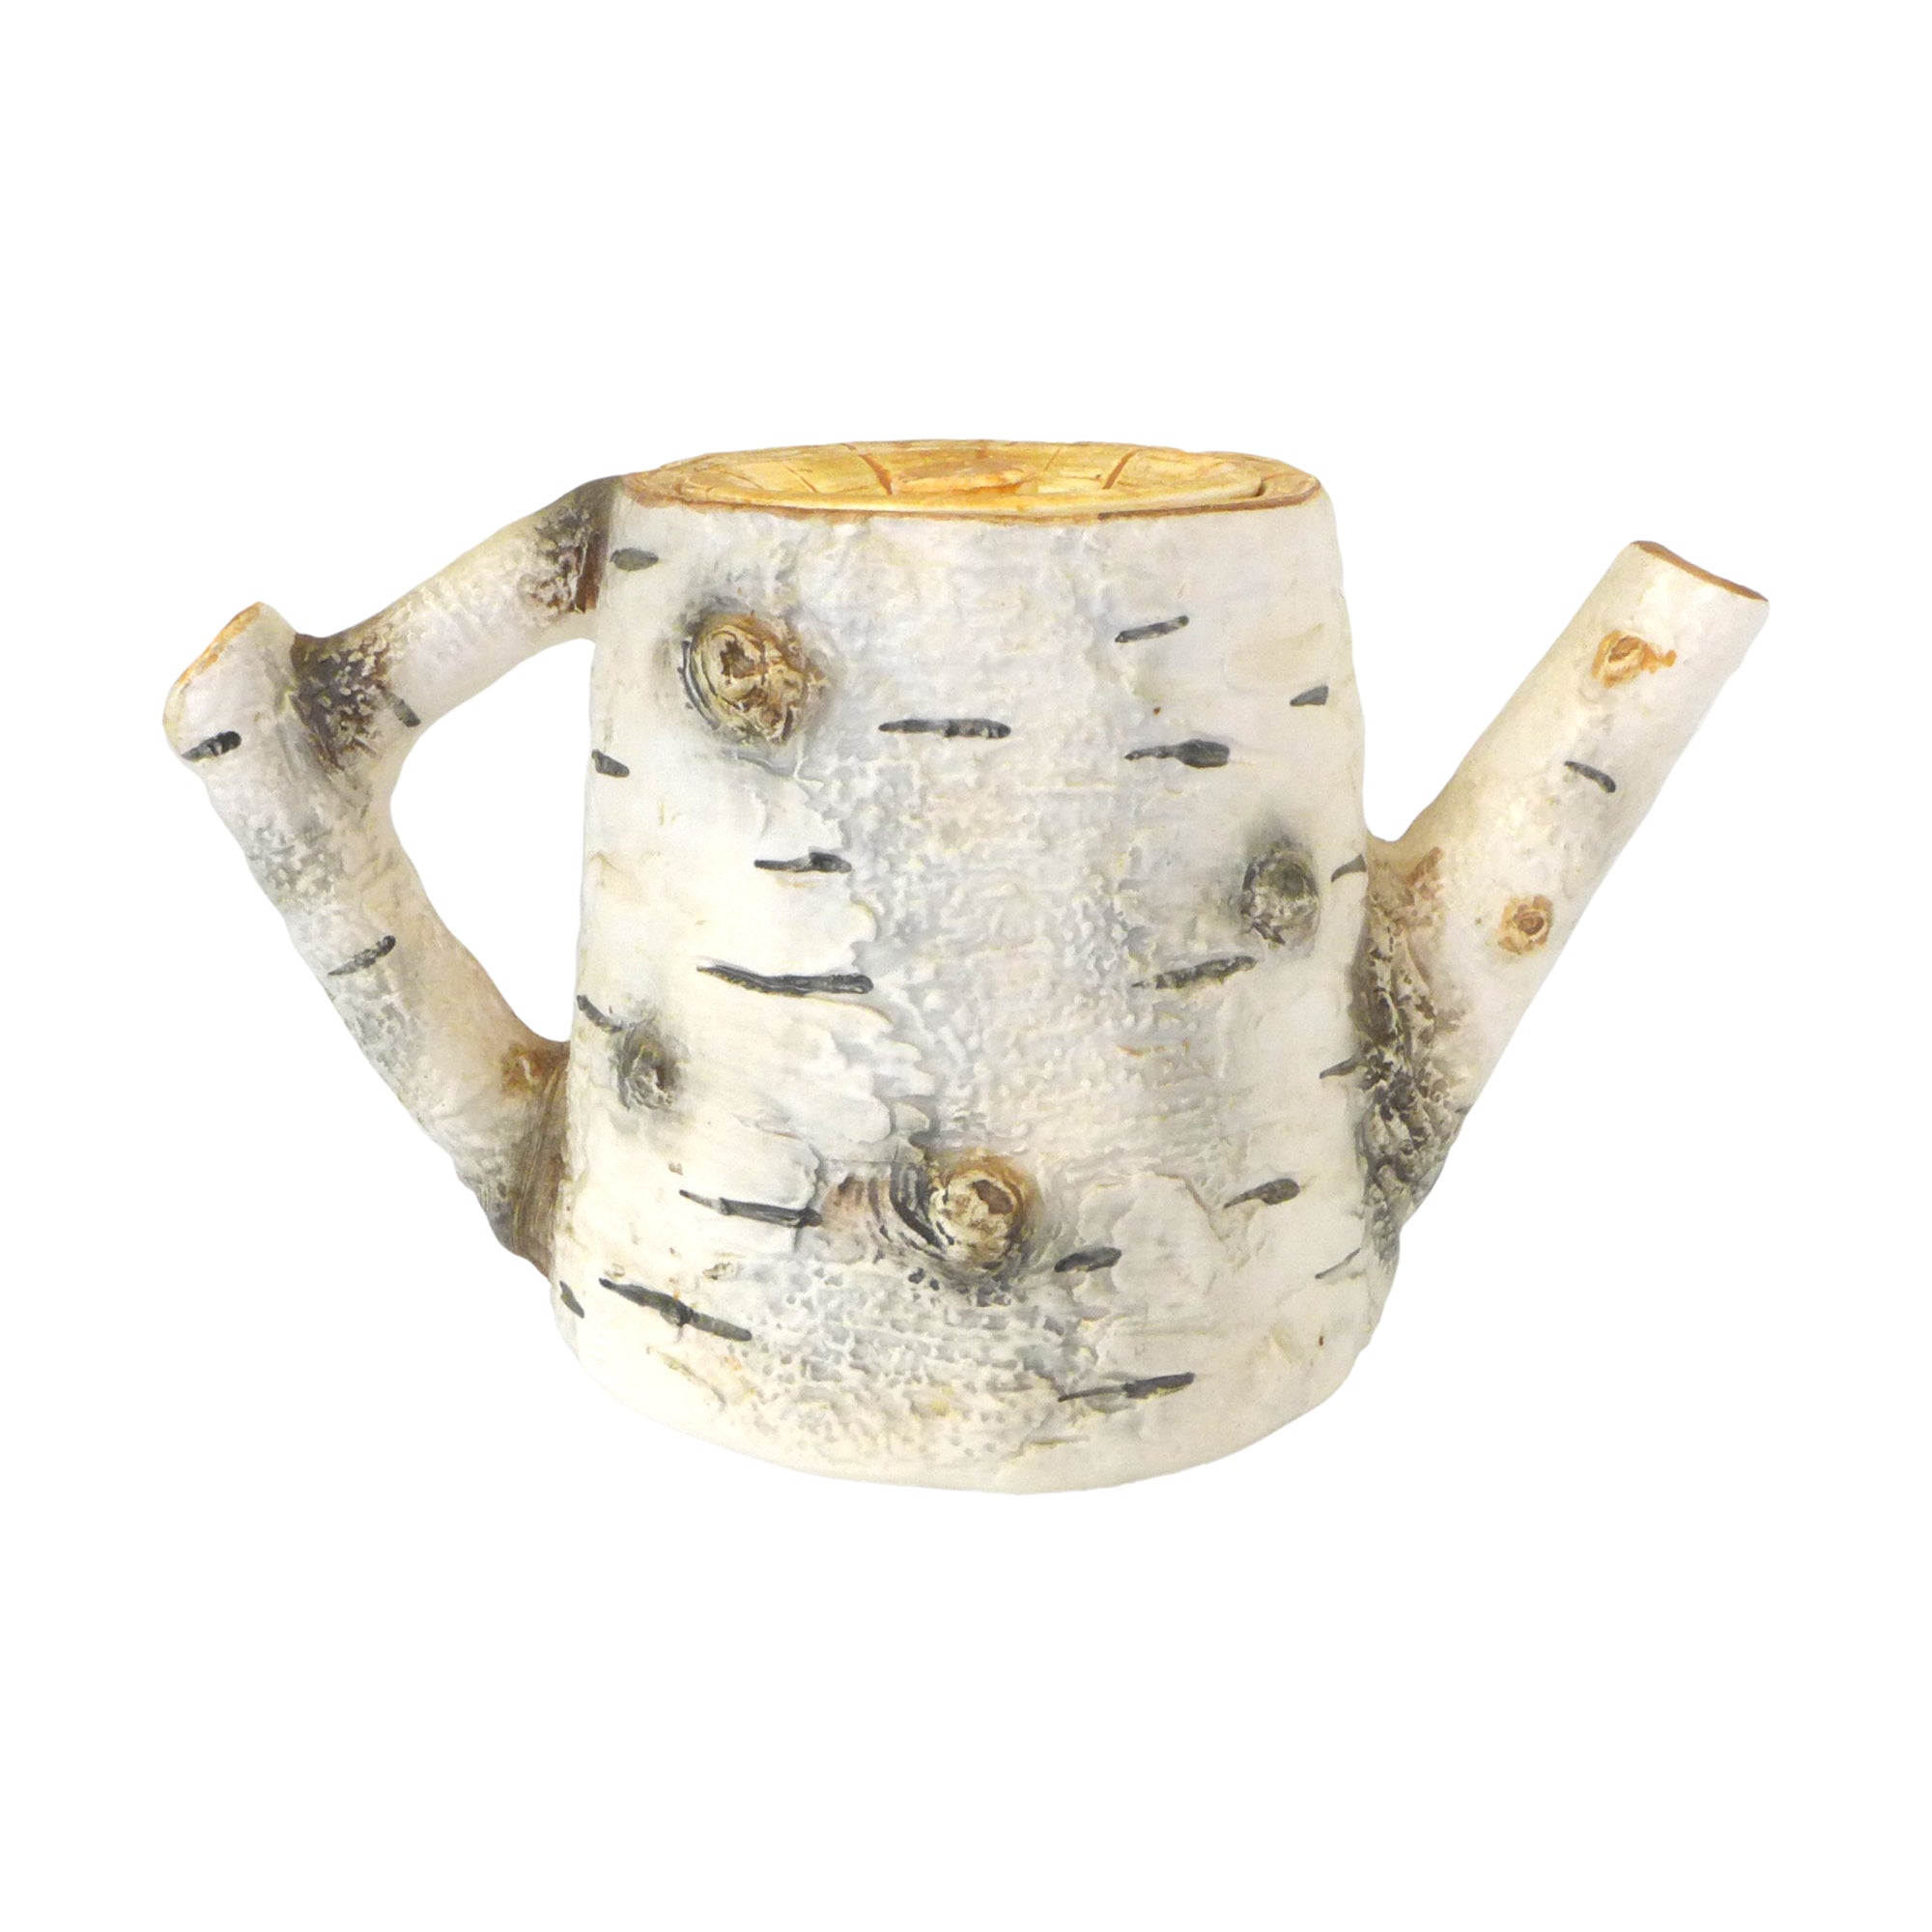 Ceramic Trompe L’Oeil “Birch” Teapot